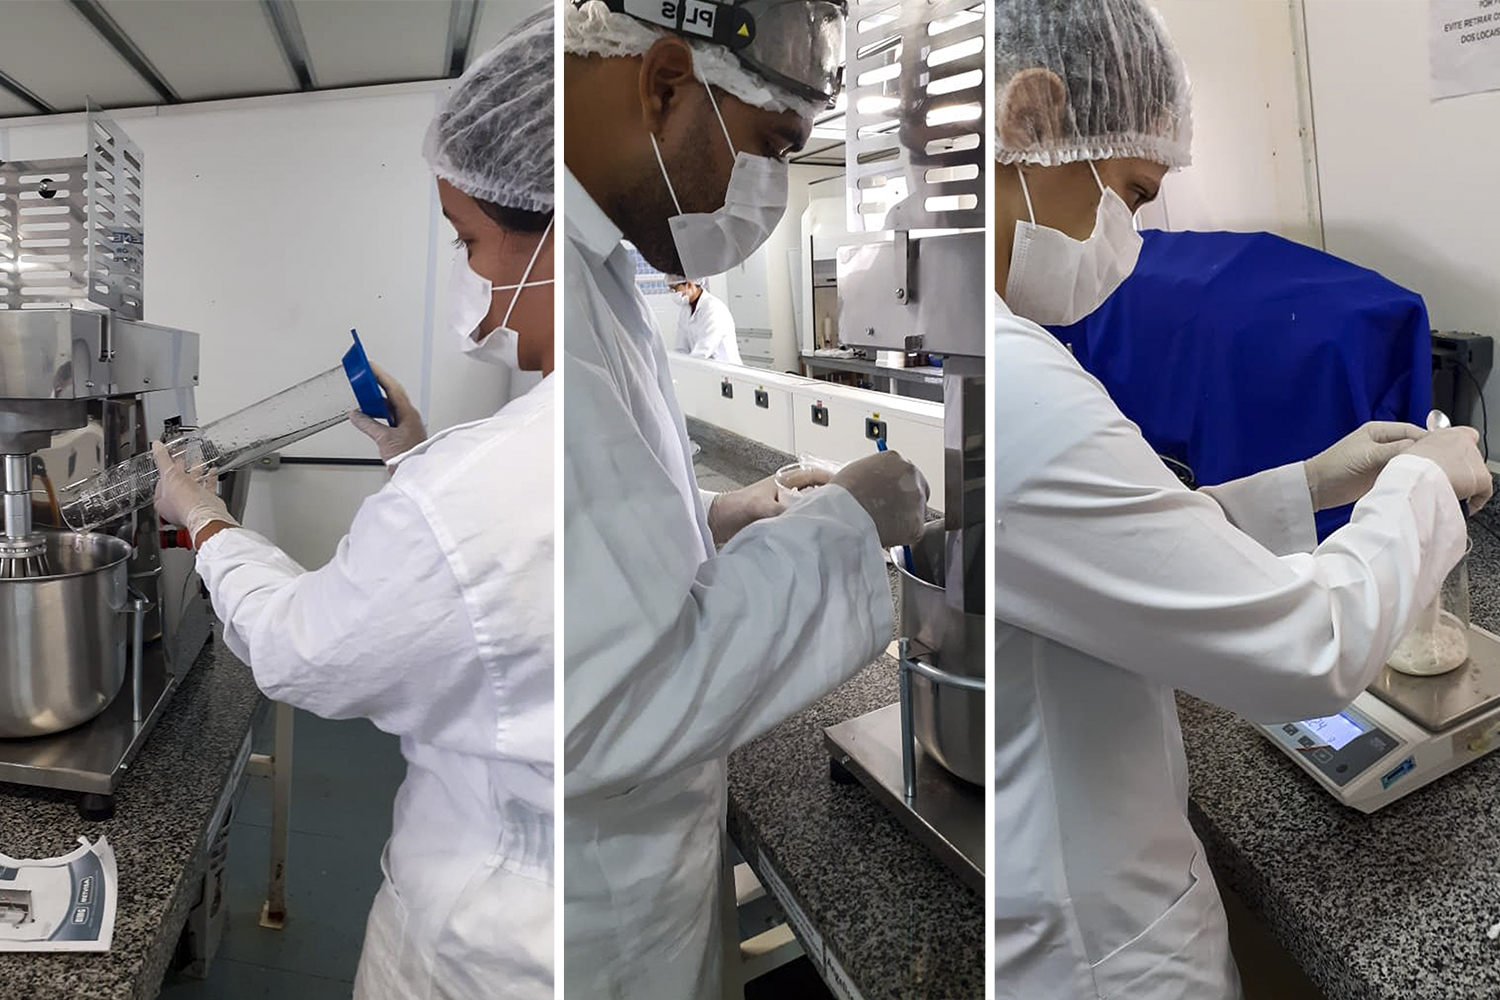 Equipe de servidores do campus Sertão está produzindo álcool gel e glicerinado para o Hospital Regional (foto: arquivo pessoal)